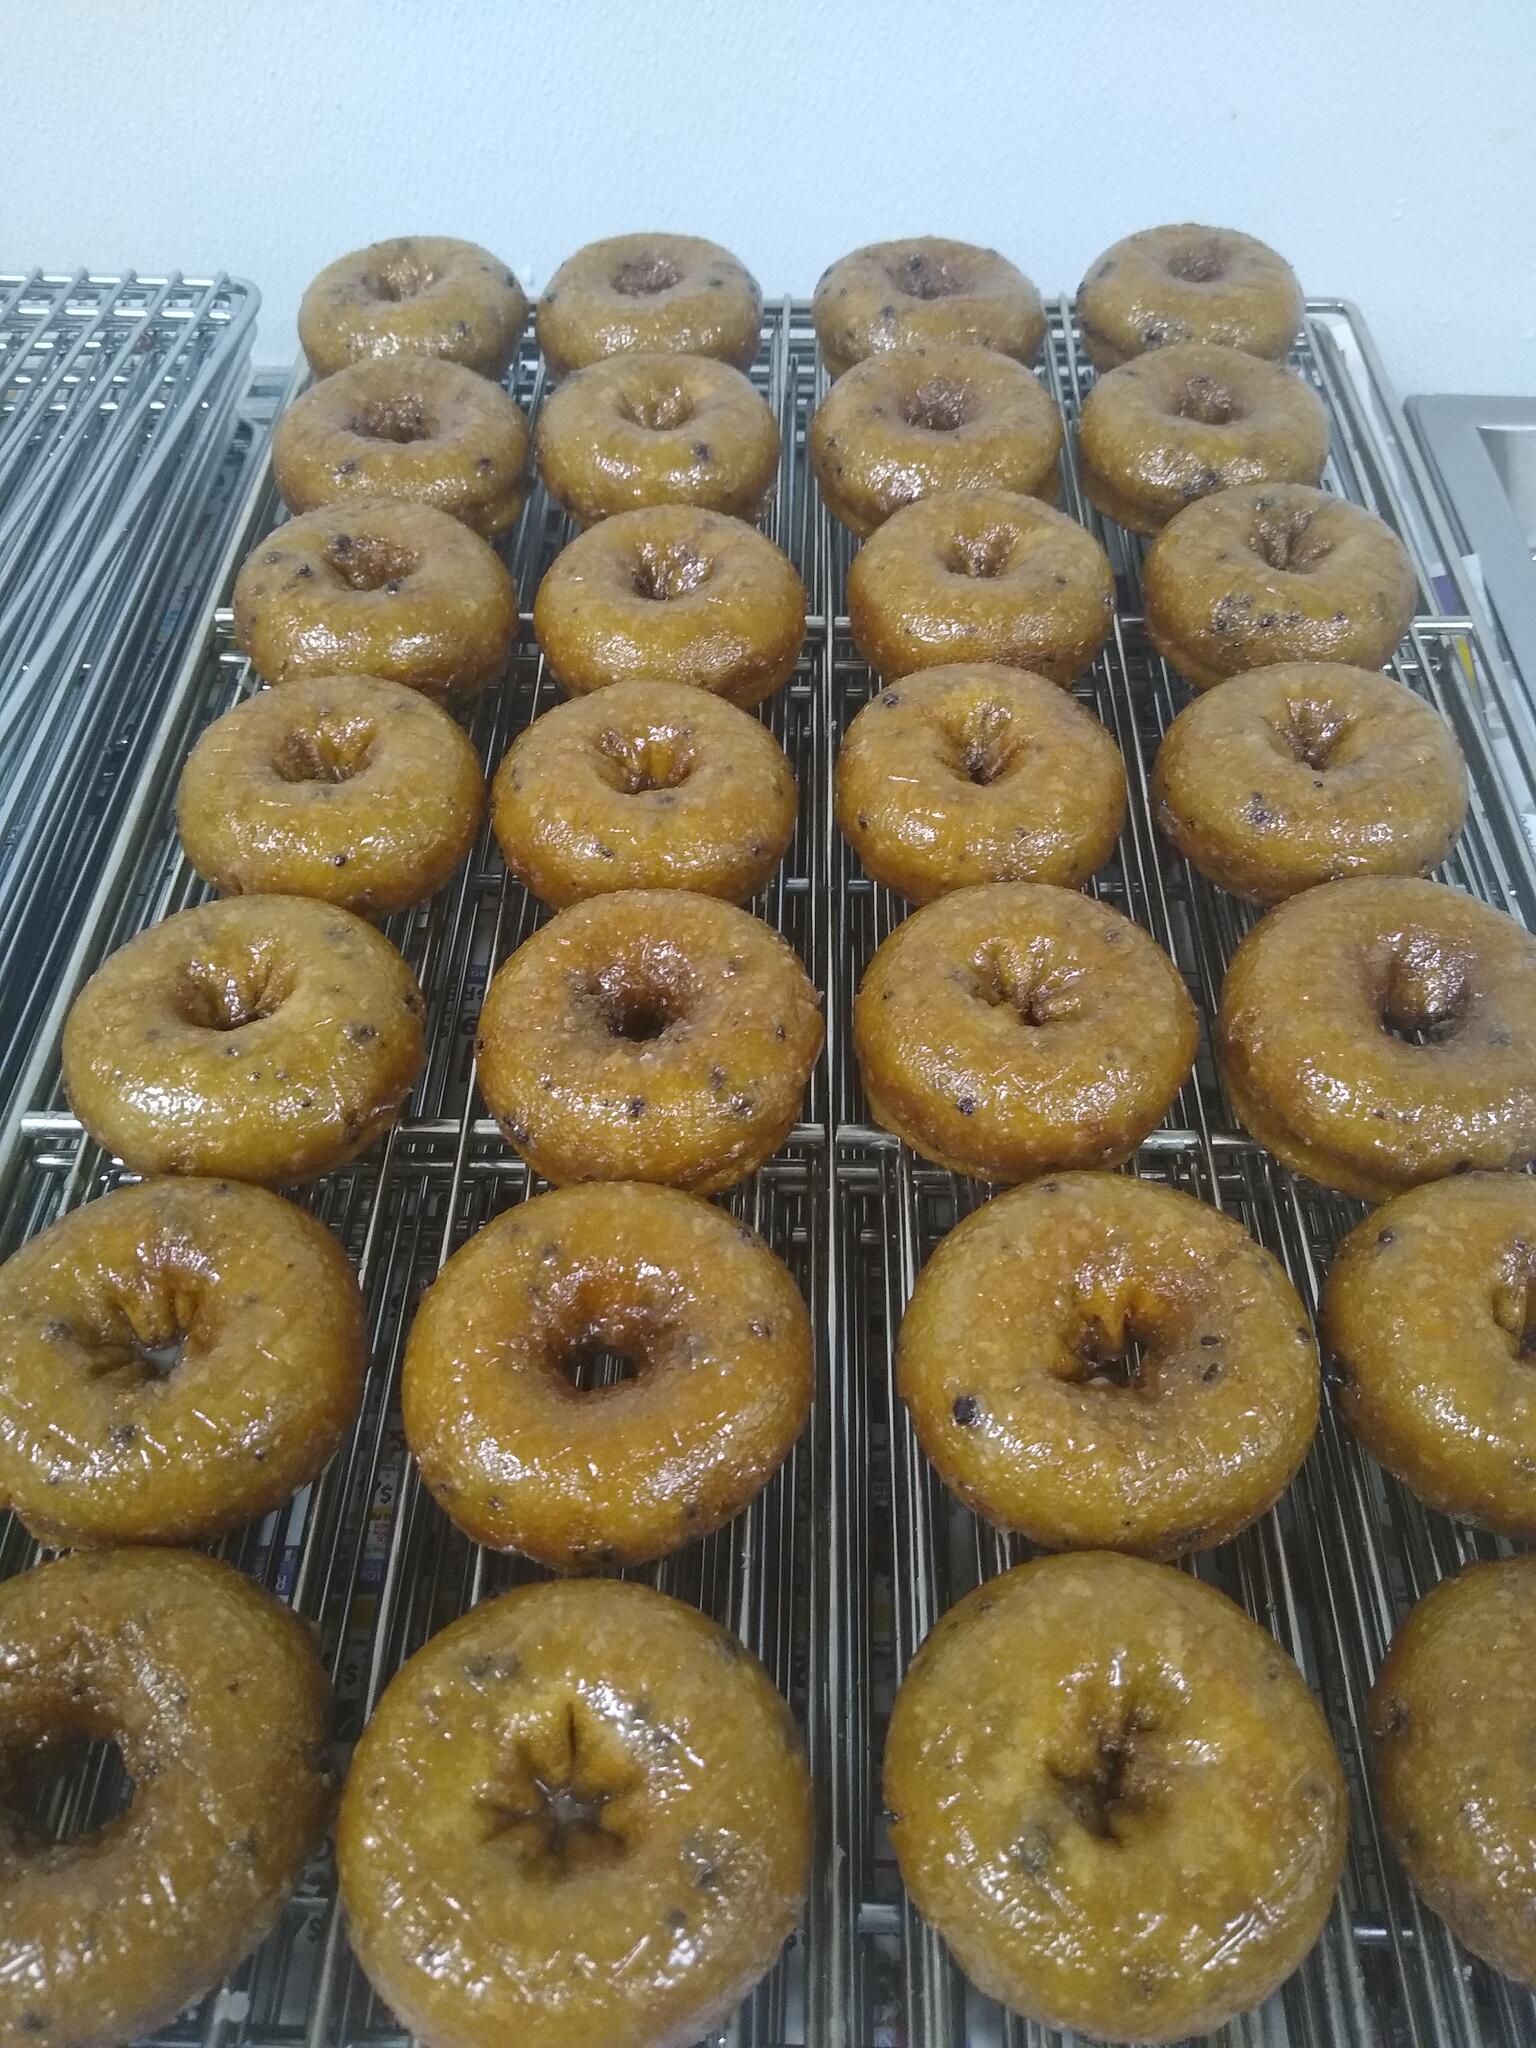 Peak Donuts